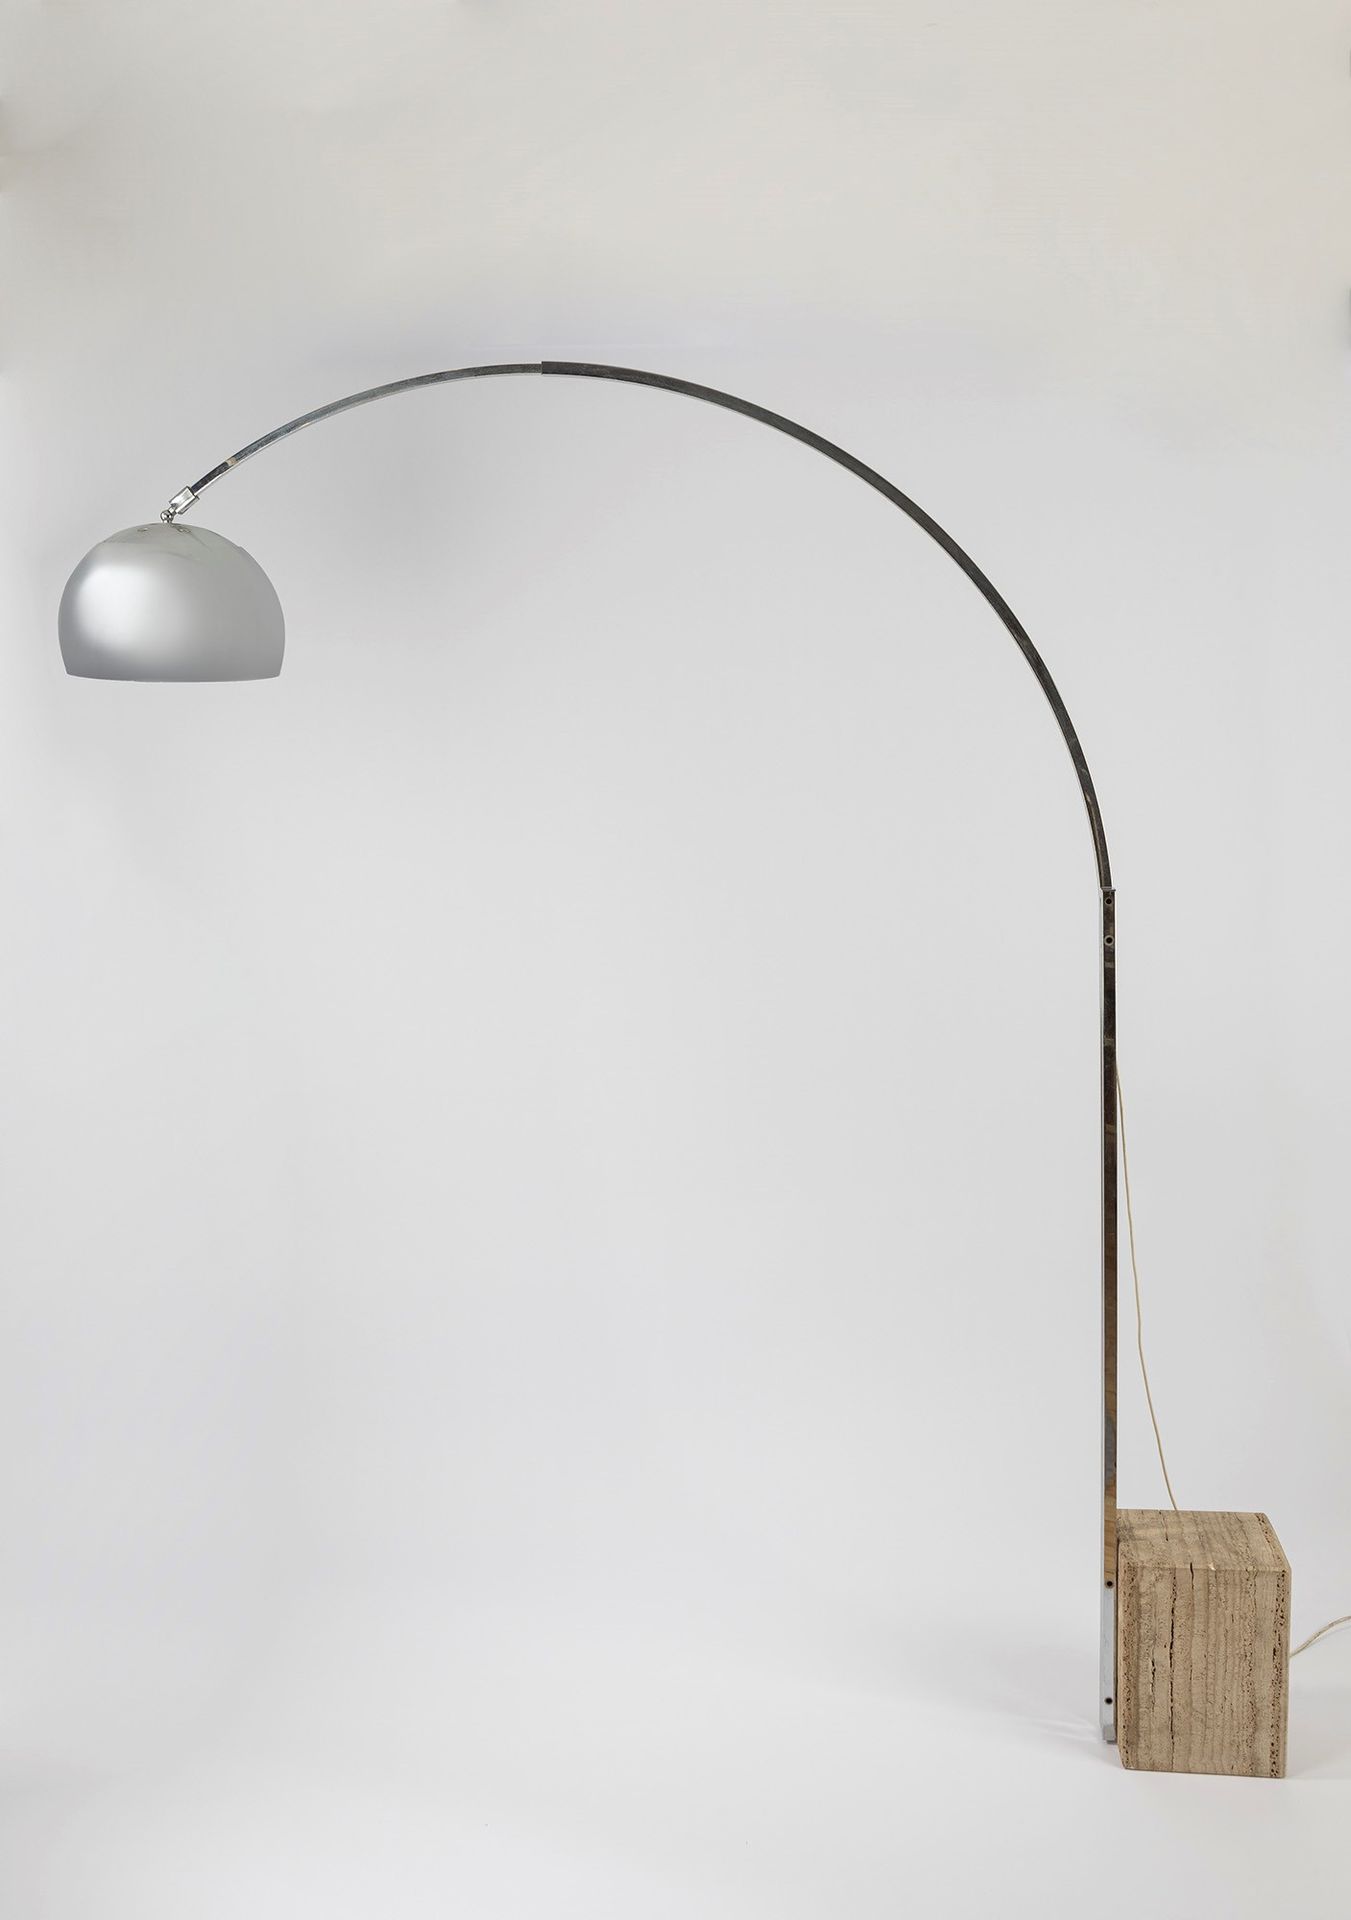 ITALIAN MANUFACTURE Stehlampe, 60er Jahre

Basis cm 27 x 16 x 35 H, max. Grundfl&hellip;